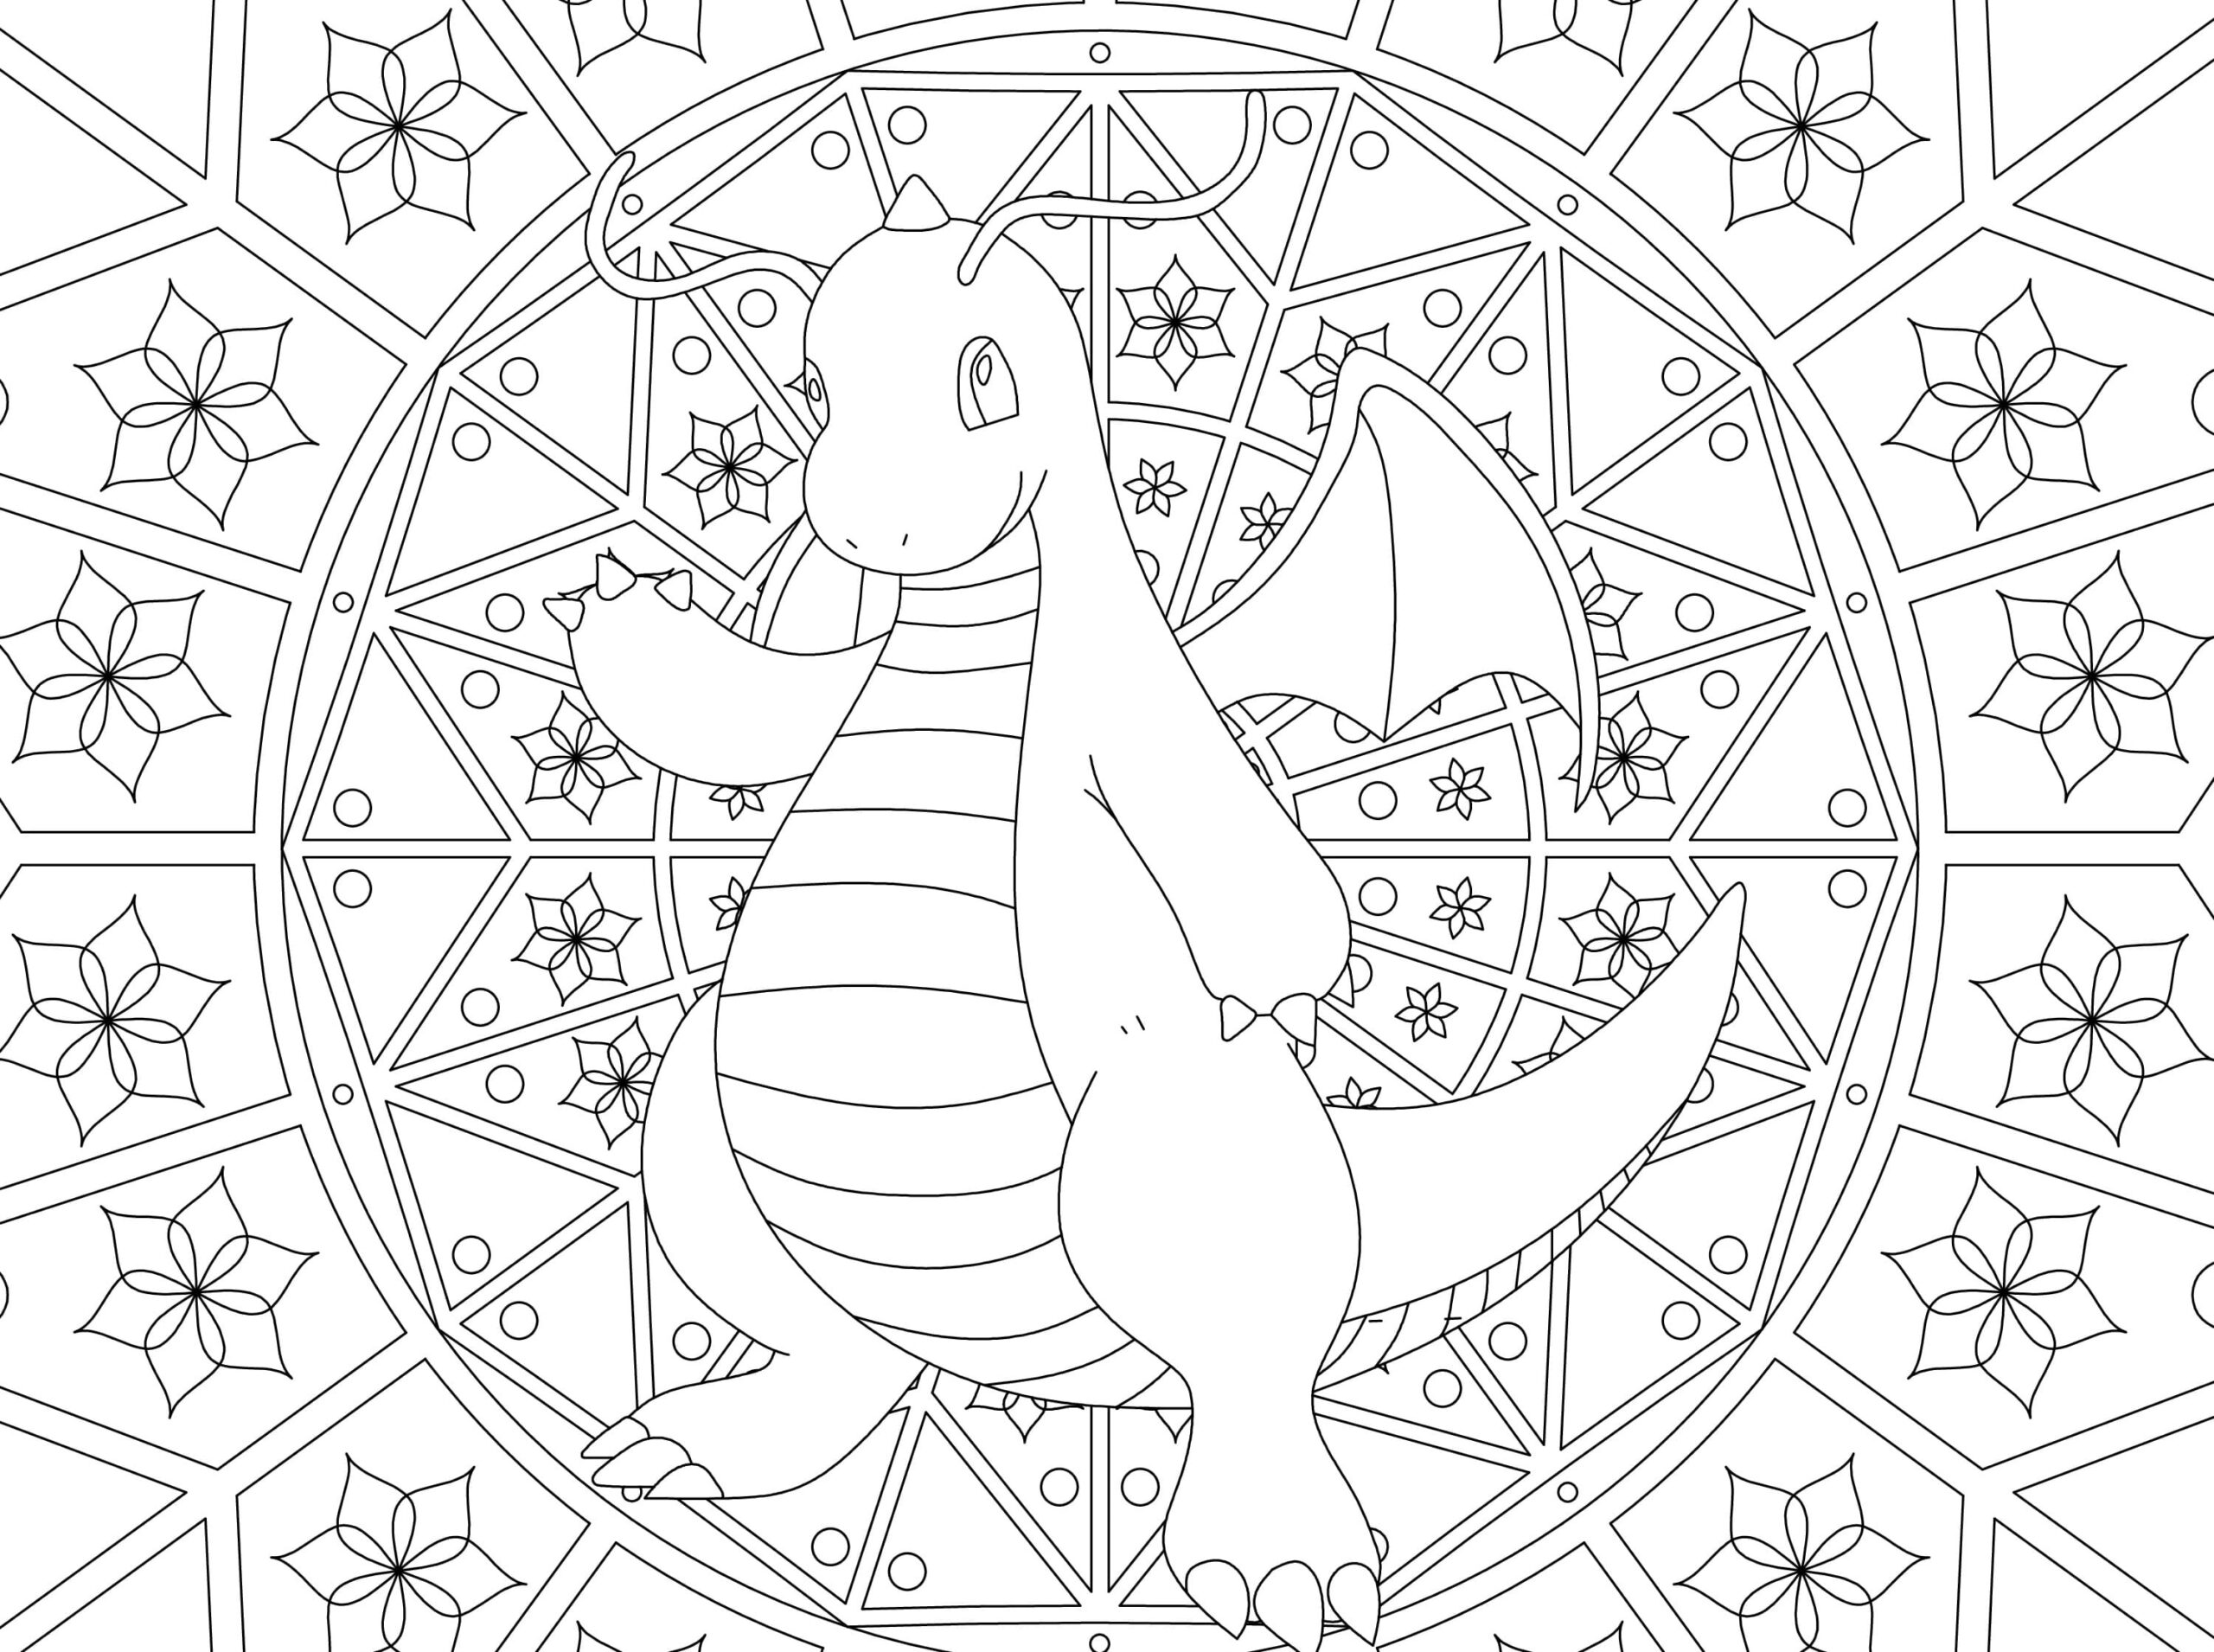 Ausmalbilder Mandala Pokemon. Kostenlos Drucken, Mehr Als 80 Bilder à Coloriage Dracolosse